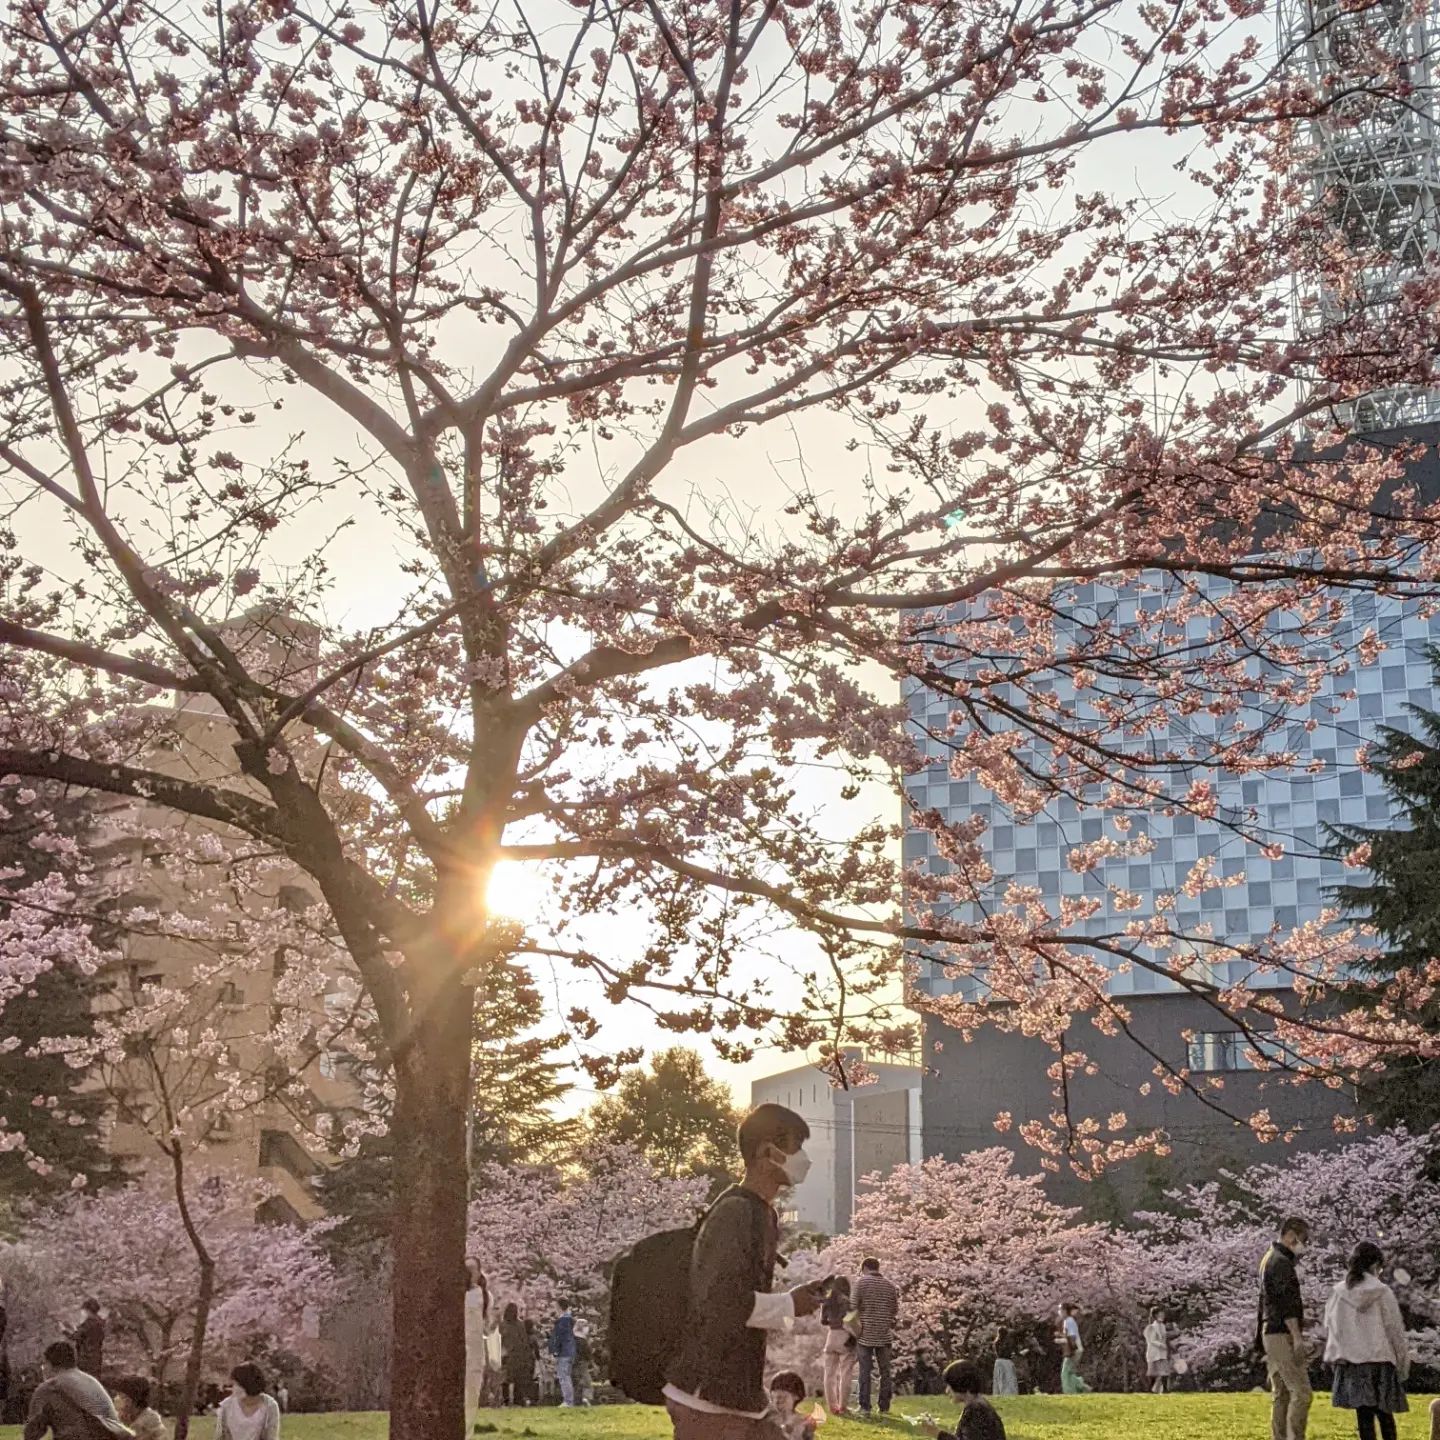 日曜日のお弁当の受け渡しが終わってから夕方錦町公園へ桜を観に行きました。ここの桜はピンクかわいいです8,9,10日とサクラ咲くお弁当のご予約お受け取りありがとうございました今週の15,16,17日分のご予約は明日が締切となります。メッセージお待ちしております (Instagram)